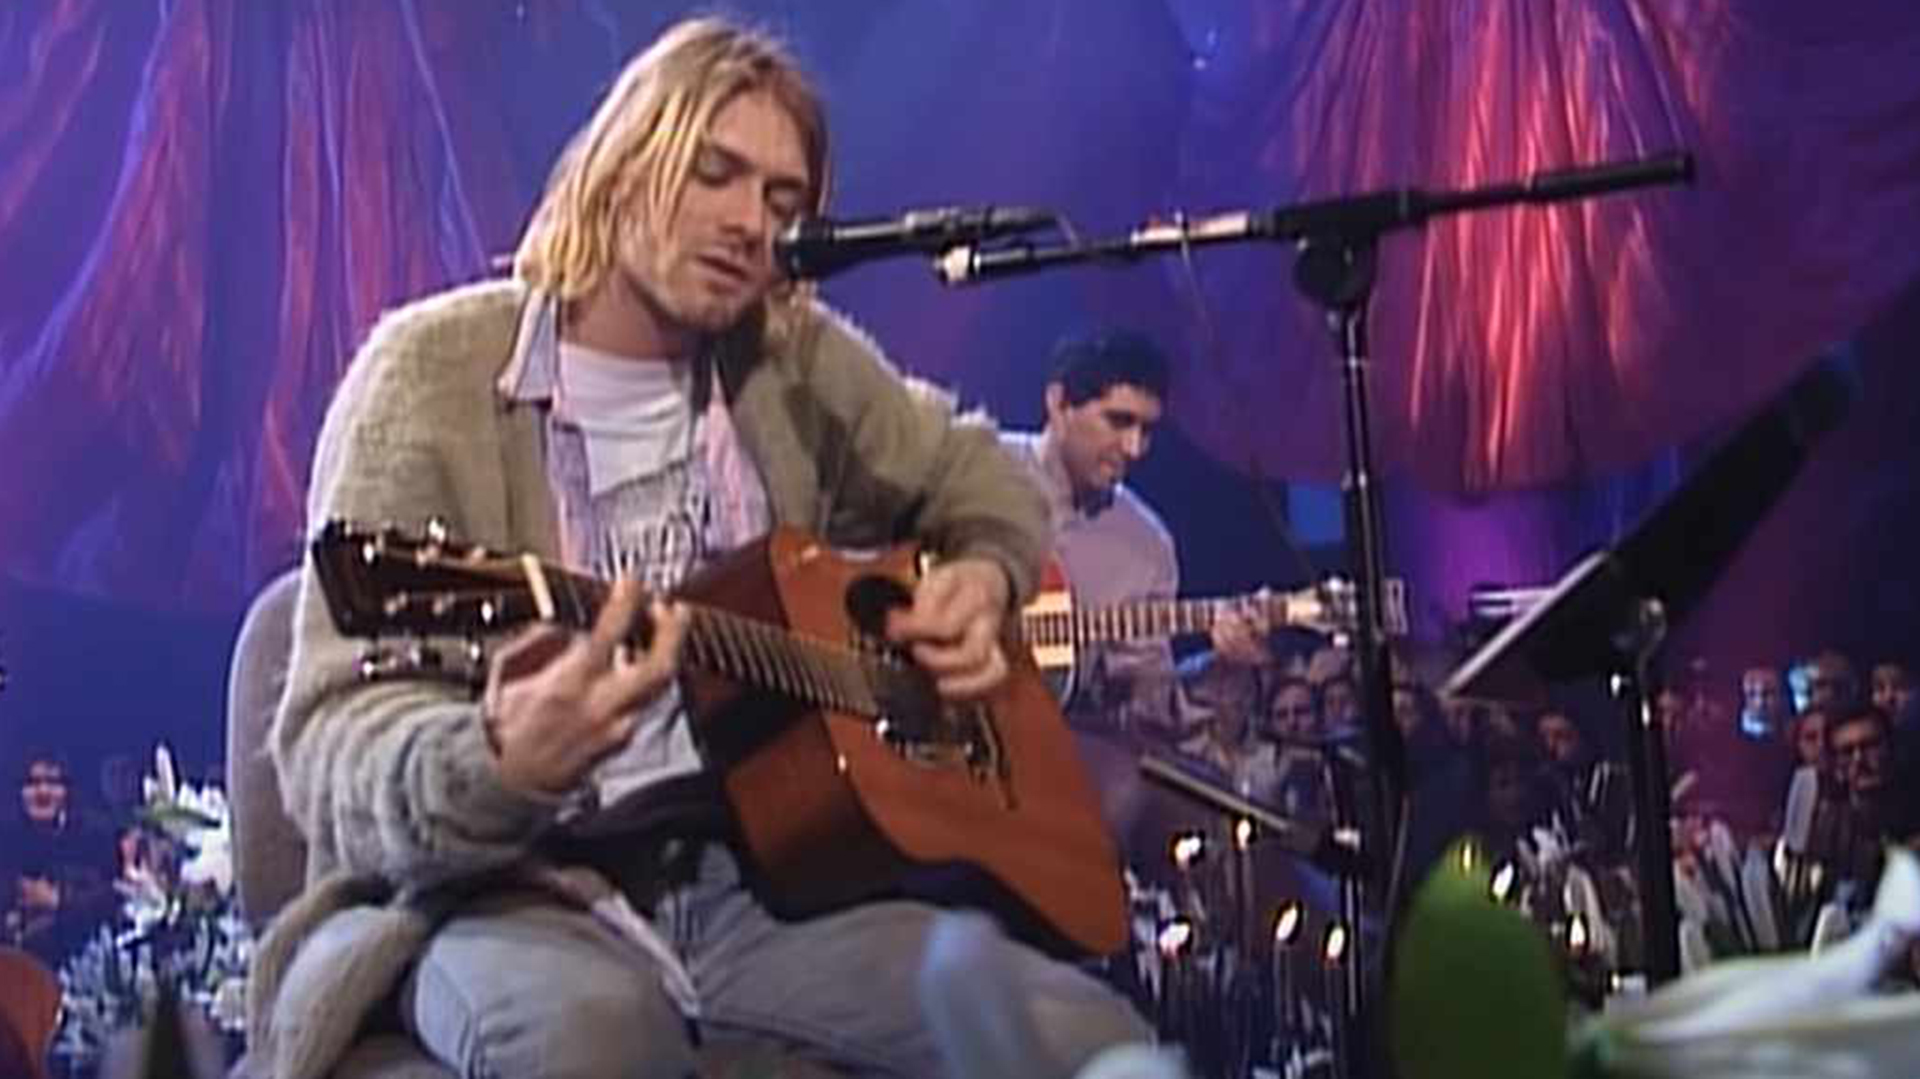 Kurt Cobain, líder y cantante de Nirvana, revolucionó la música con la aparición de Nevermind, su segundo disco. Smells Like a Teen Spirit se convirtió en un impensado himno generacional